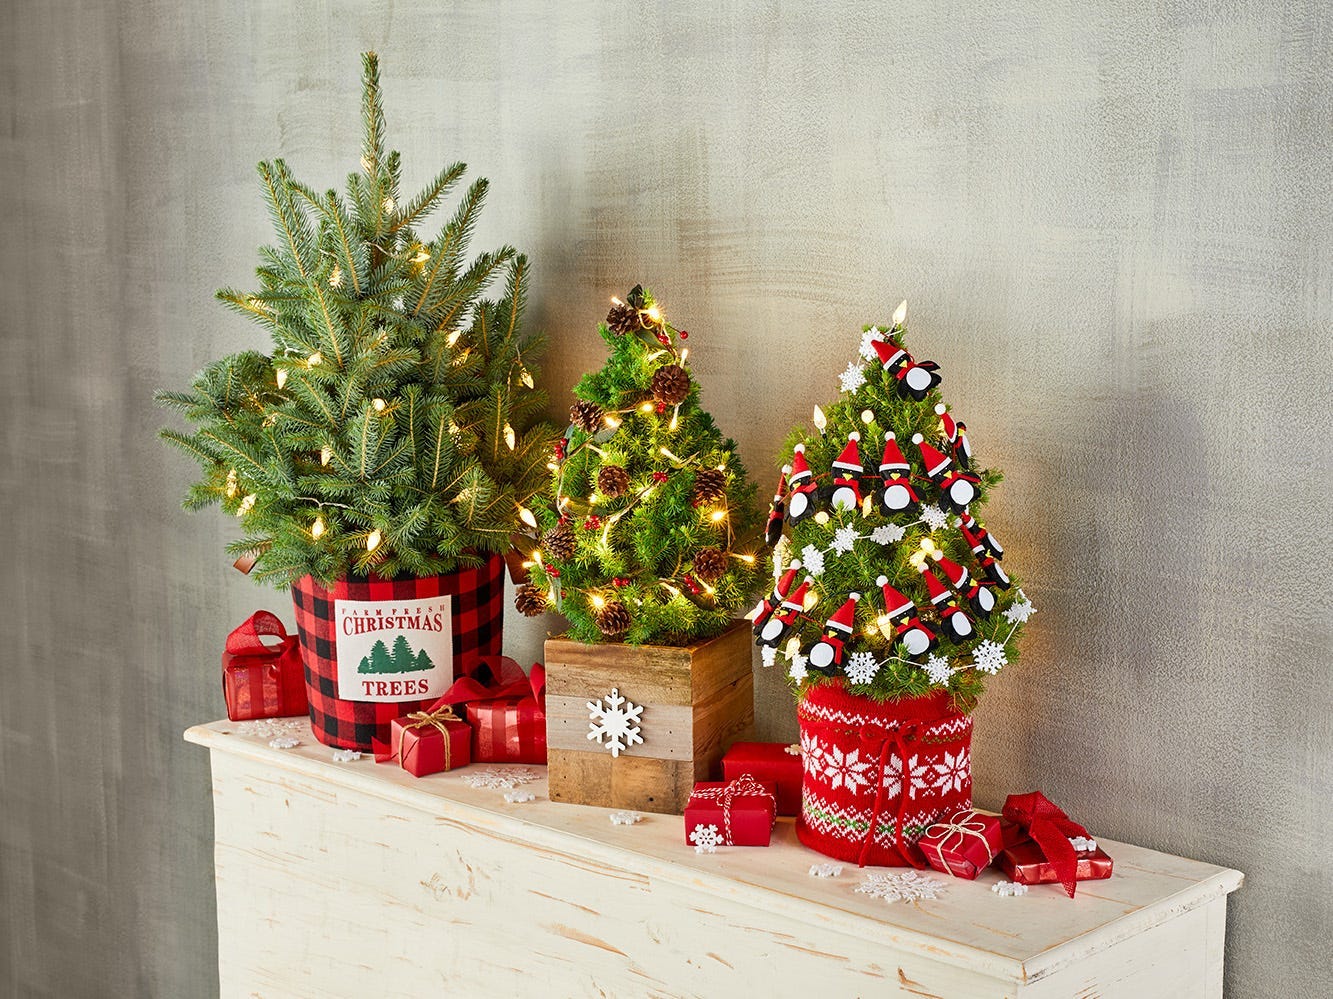 Drei kleine lebende Weihnachtsbäume von Harry & David.